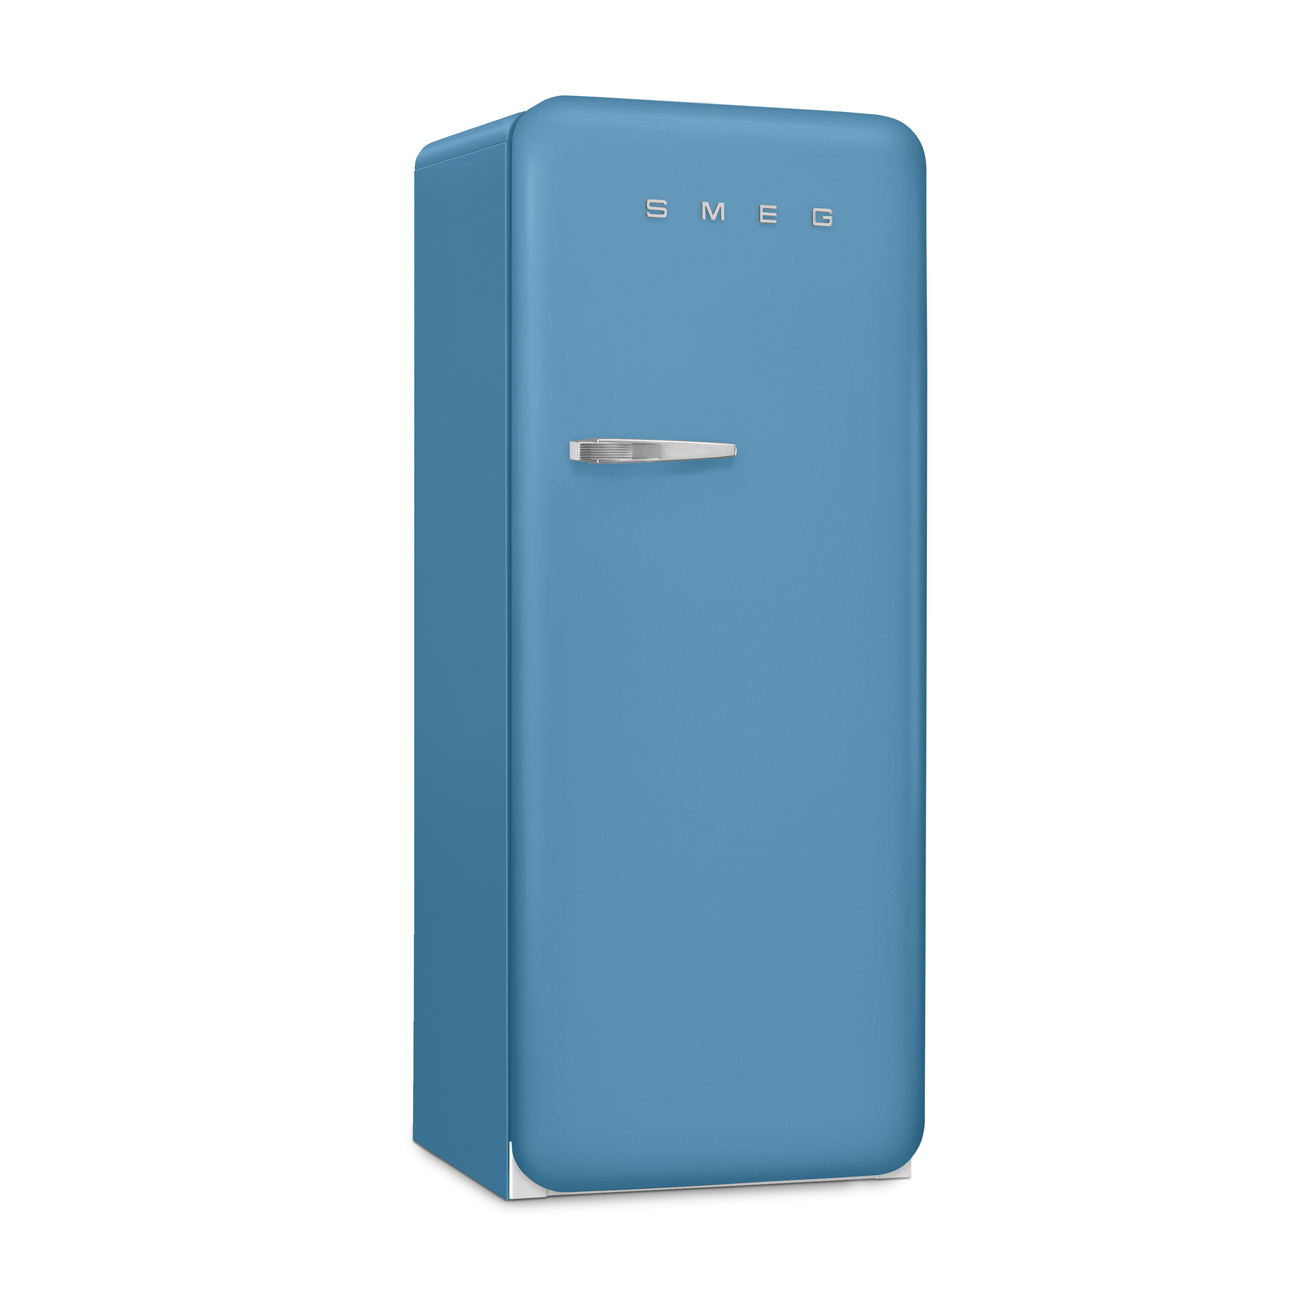 Light Blue refrigerator - Smeg_3